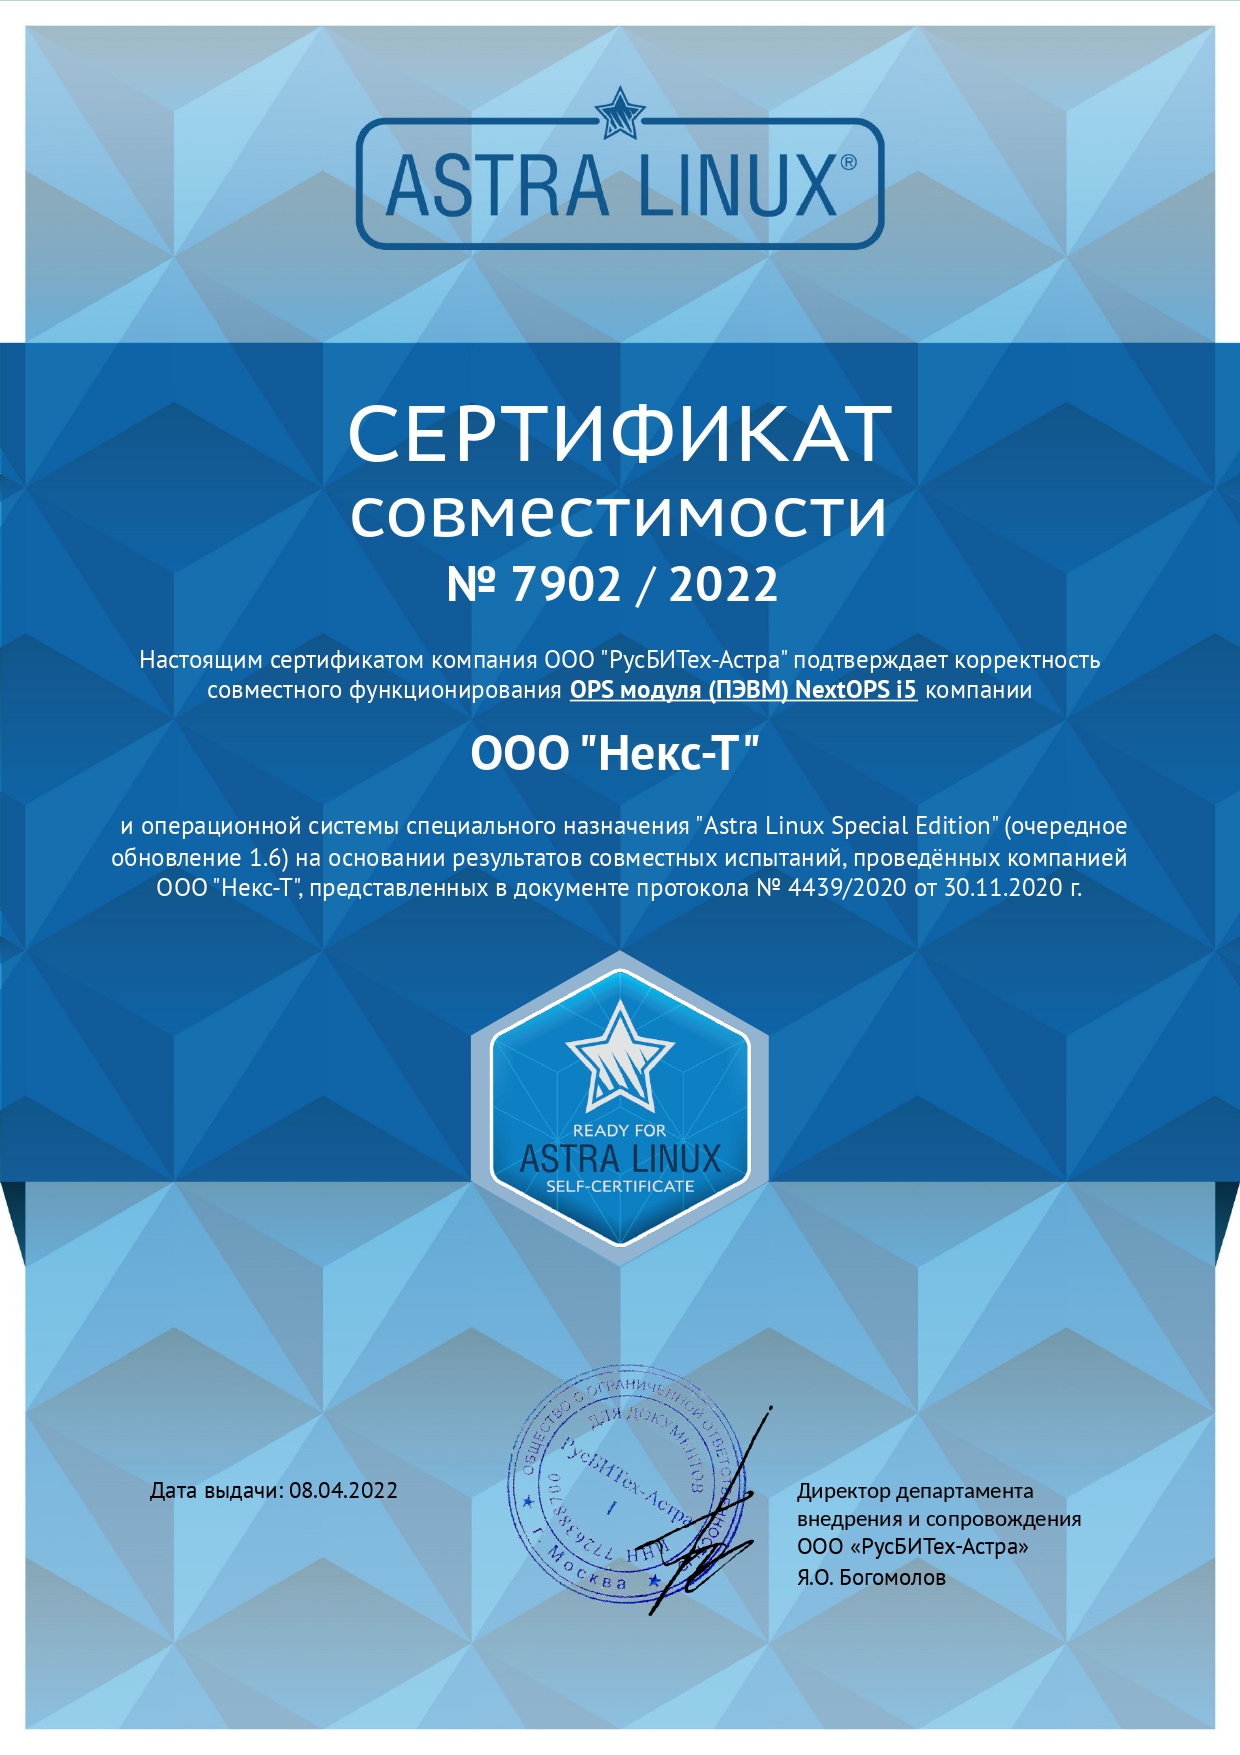 Сертификат совместимости AstraLinux